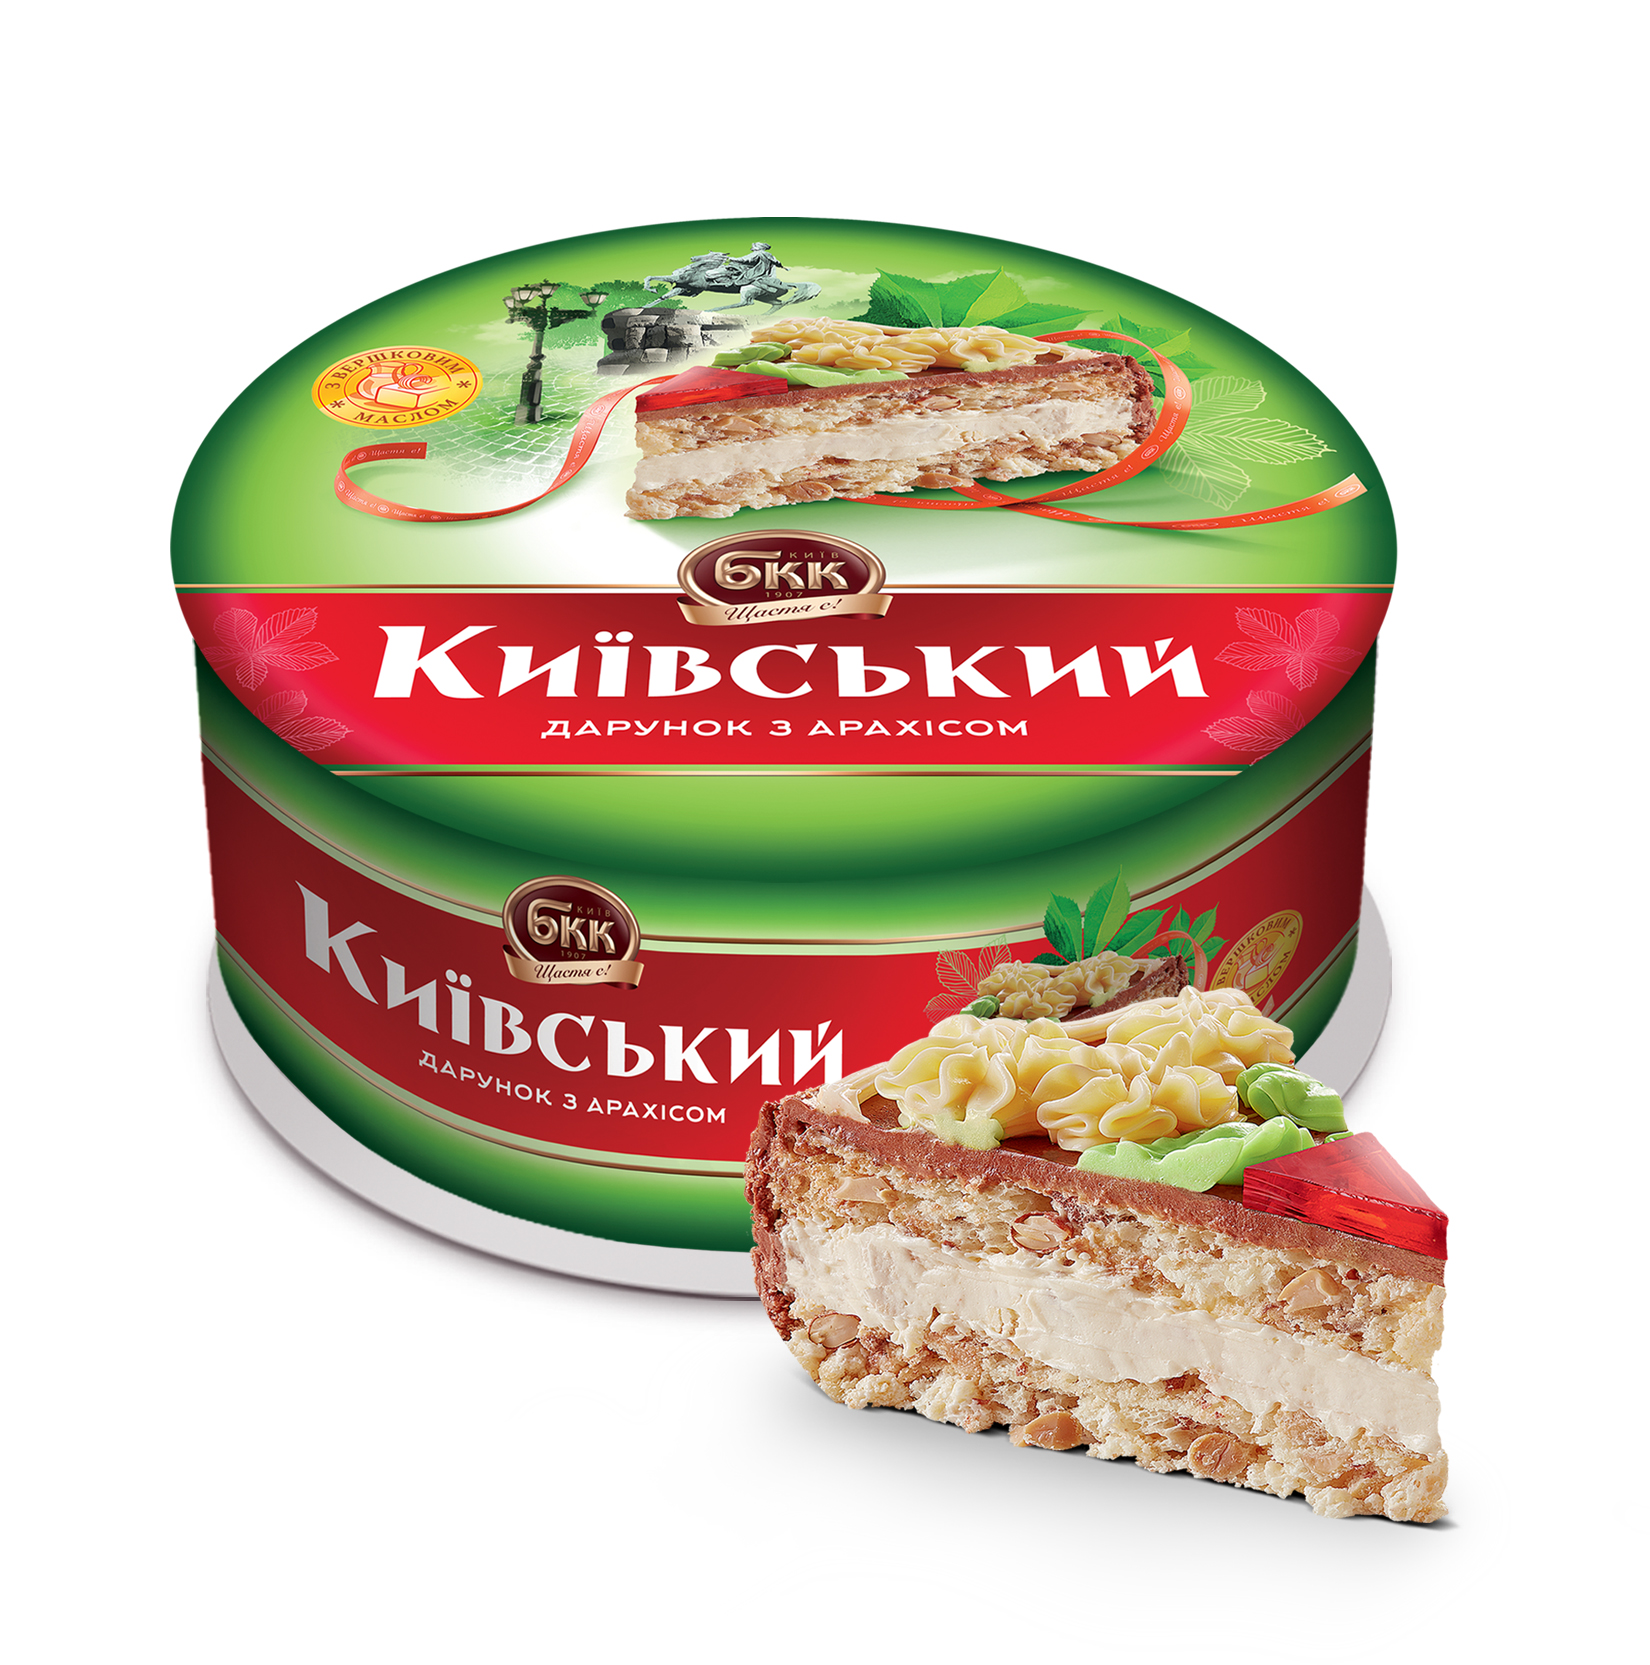 Счастье есть: сладости БКК обновили упаковку к празднику.Вокруг Света. Украина